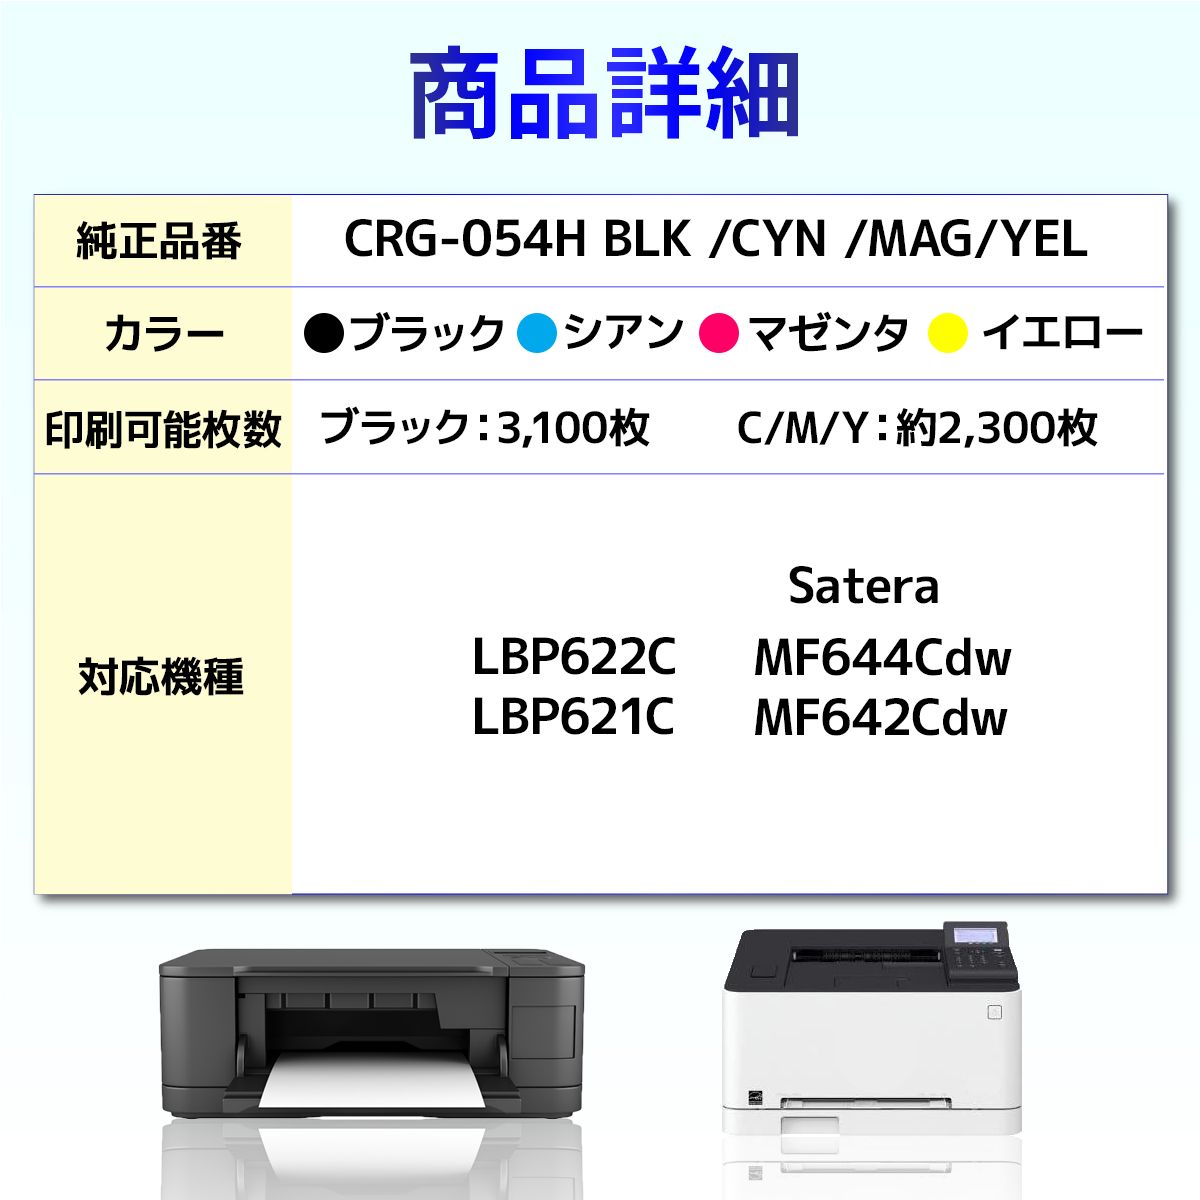 CRG-054H CRG-054HBLK CRG-054HCYN CRG-054HMAG CRG-054HYEL LBP622C